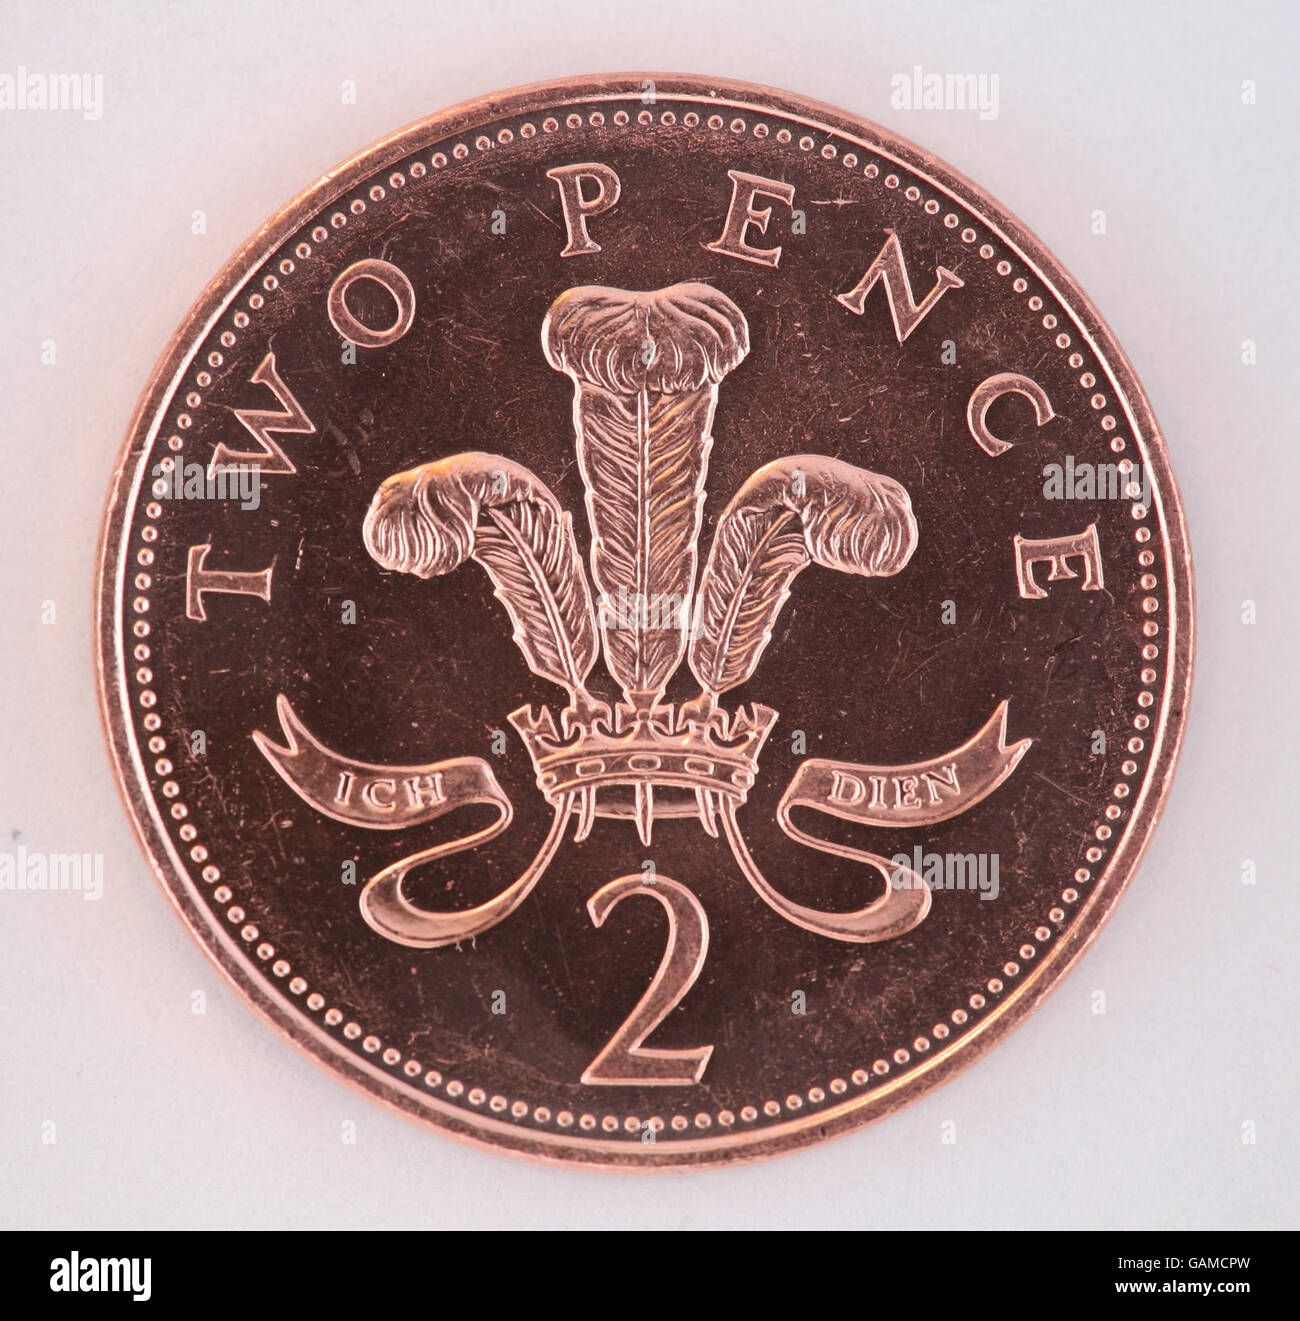 Münzen. Eine Münze mit zwei Pence. Stockfoto